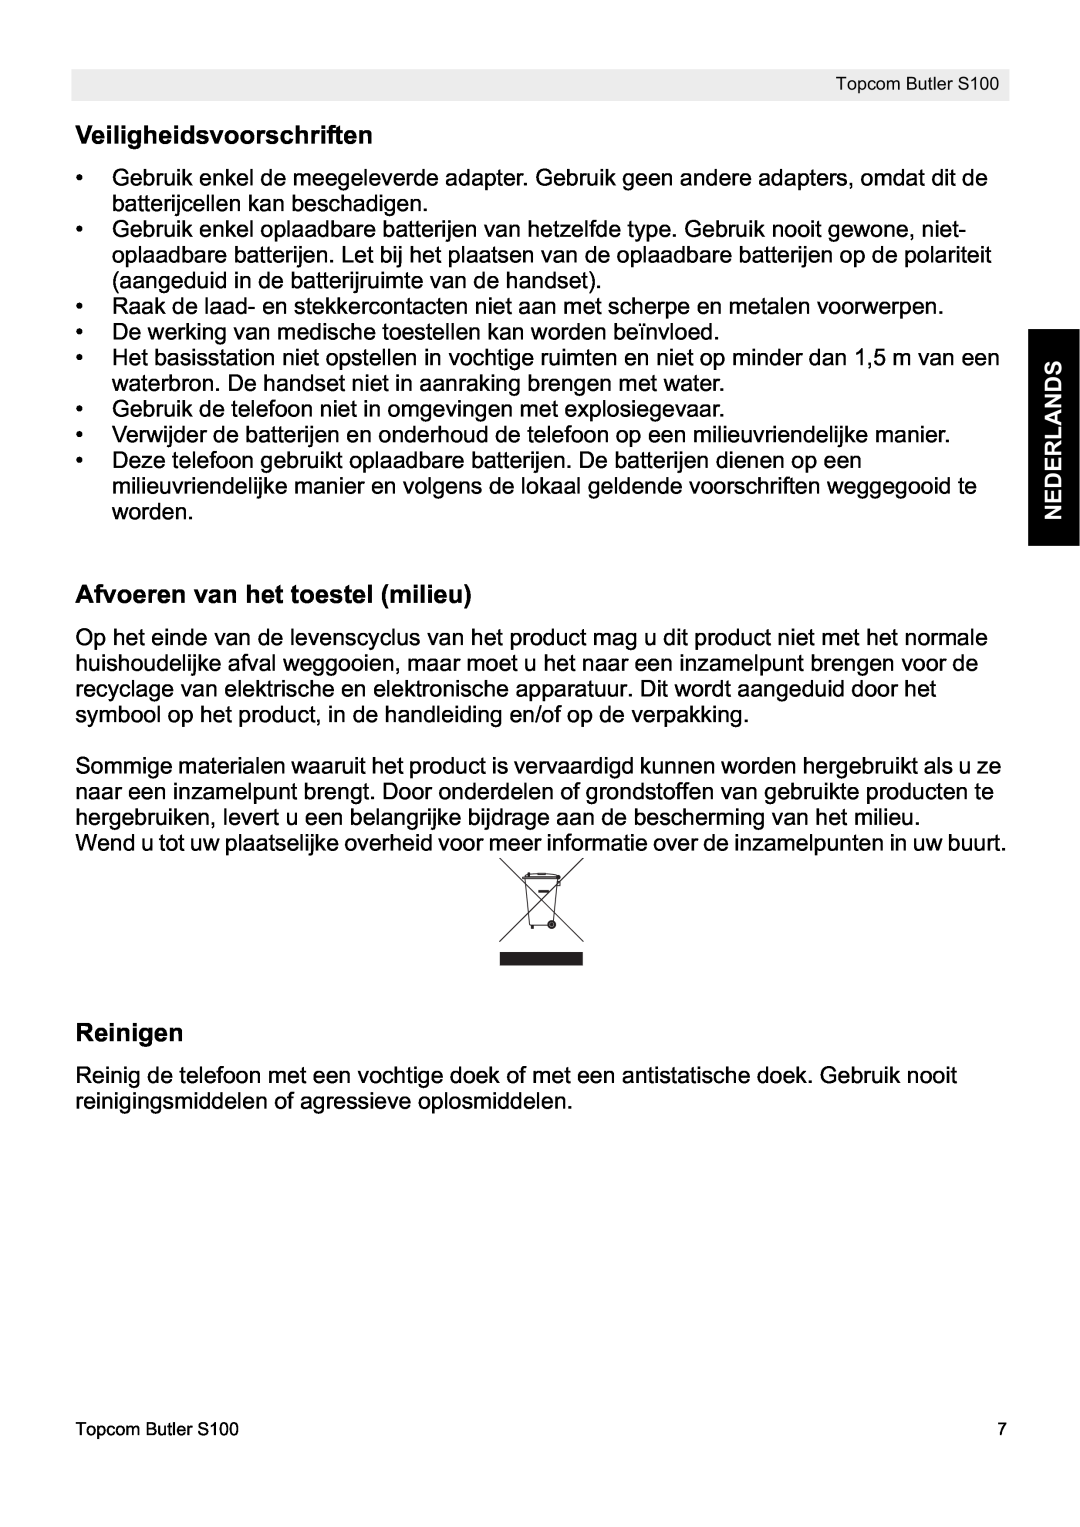 Topcom S100 manual do utilizador Veiligheidsvoorschriften, Afvoeren van het toestel milieu, Reinigen, Nederlands 